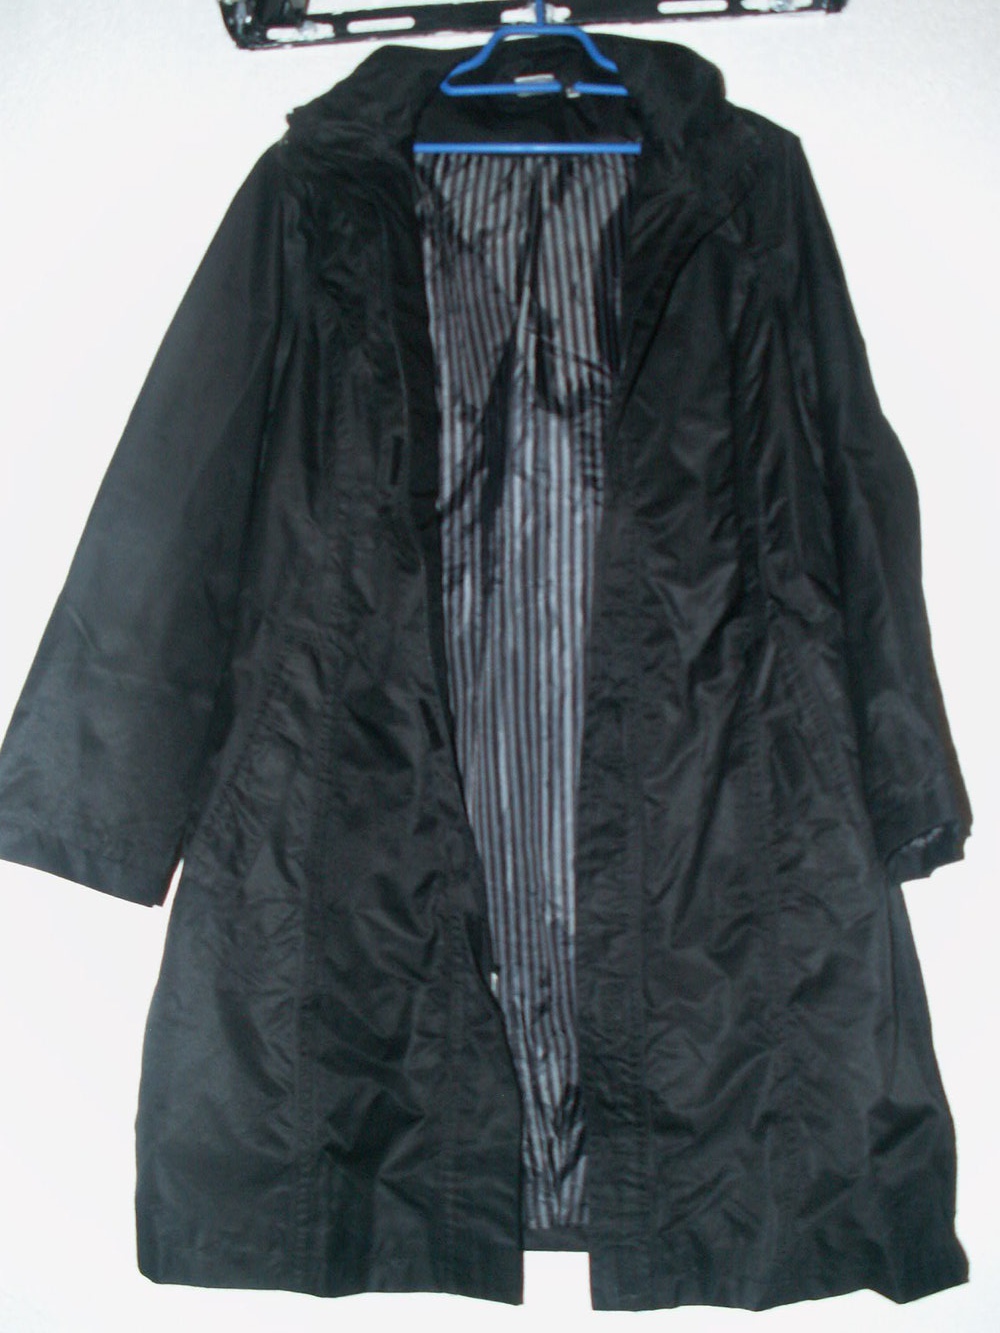 schwarze lange Übergangs-Jacke mit Kapuze